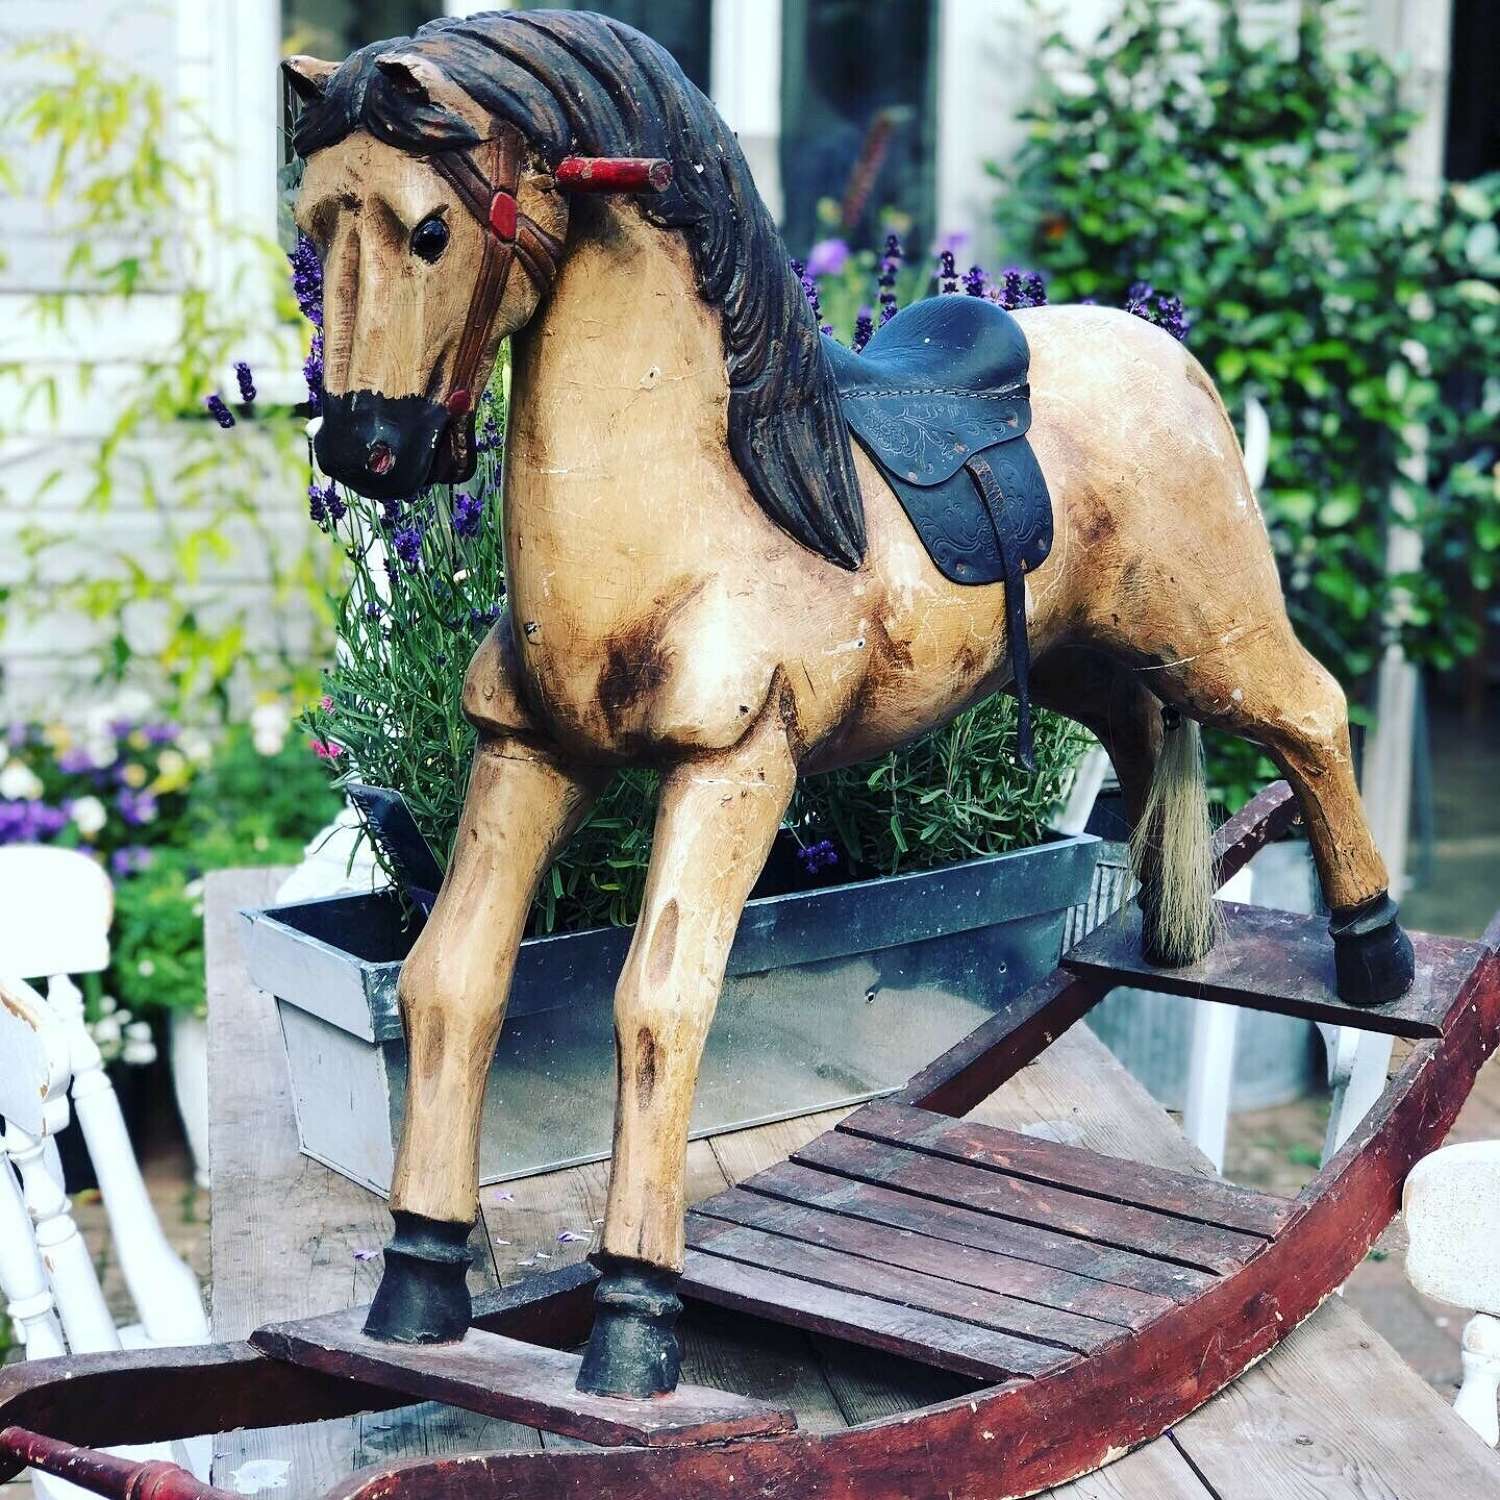 Vintage wooden rocking horse.